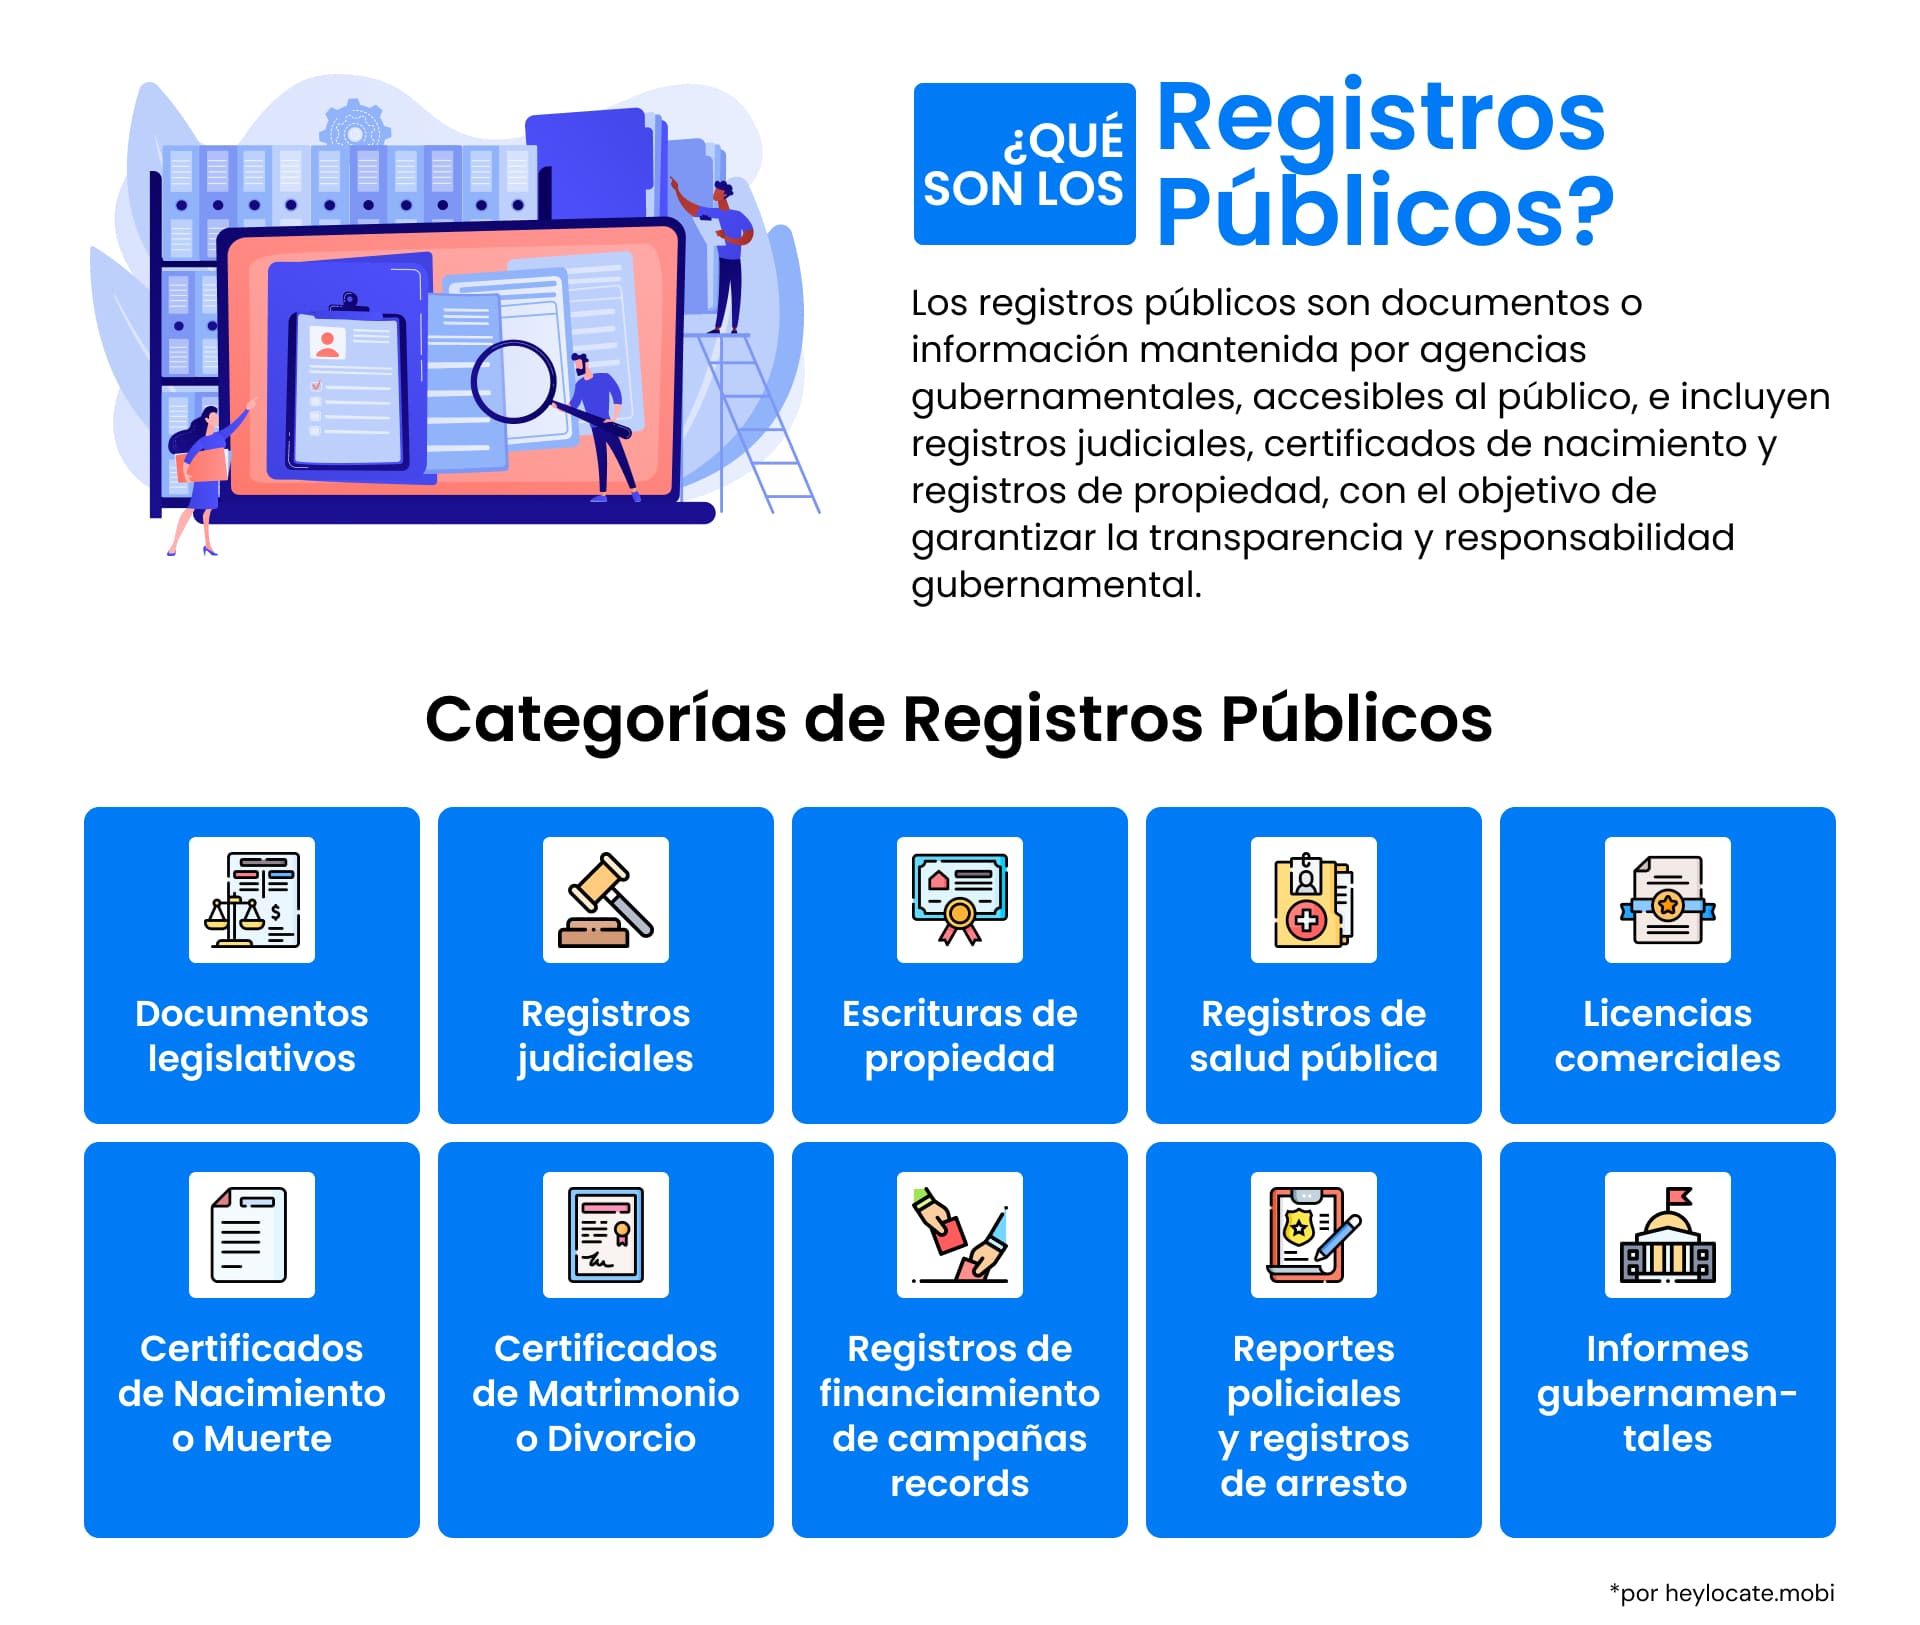 Una infografía que detalla qué son los registros públicos, con iconos que representan distintas categorías, desde documentos legislativos hasta historiales médicos.